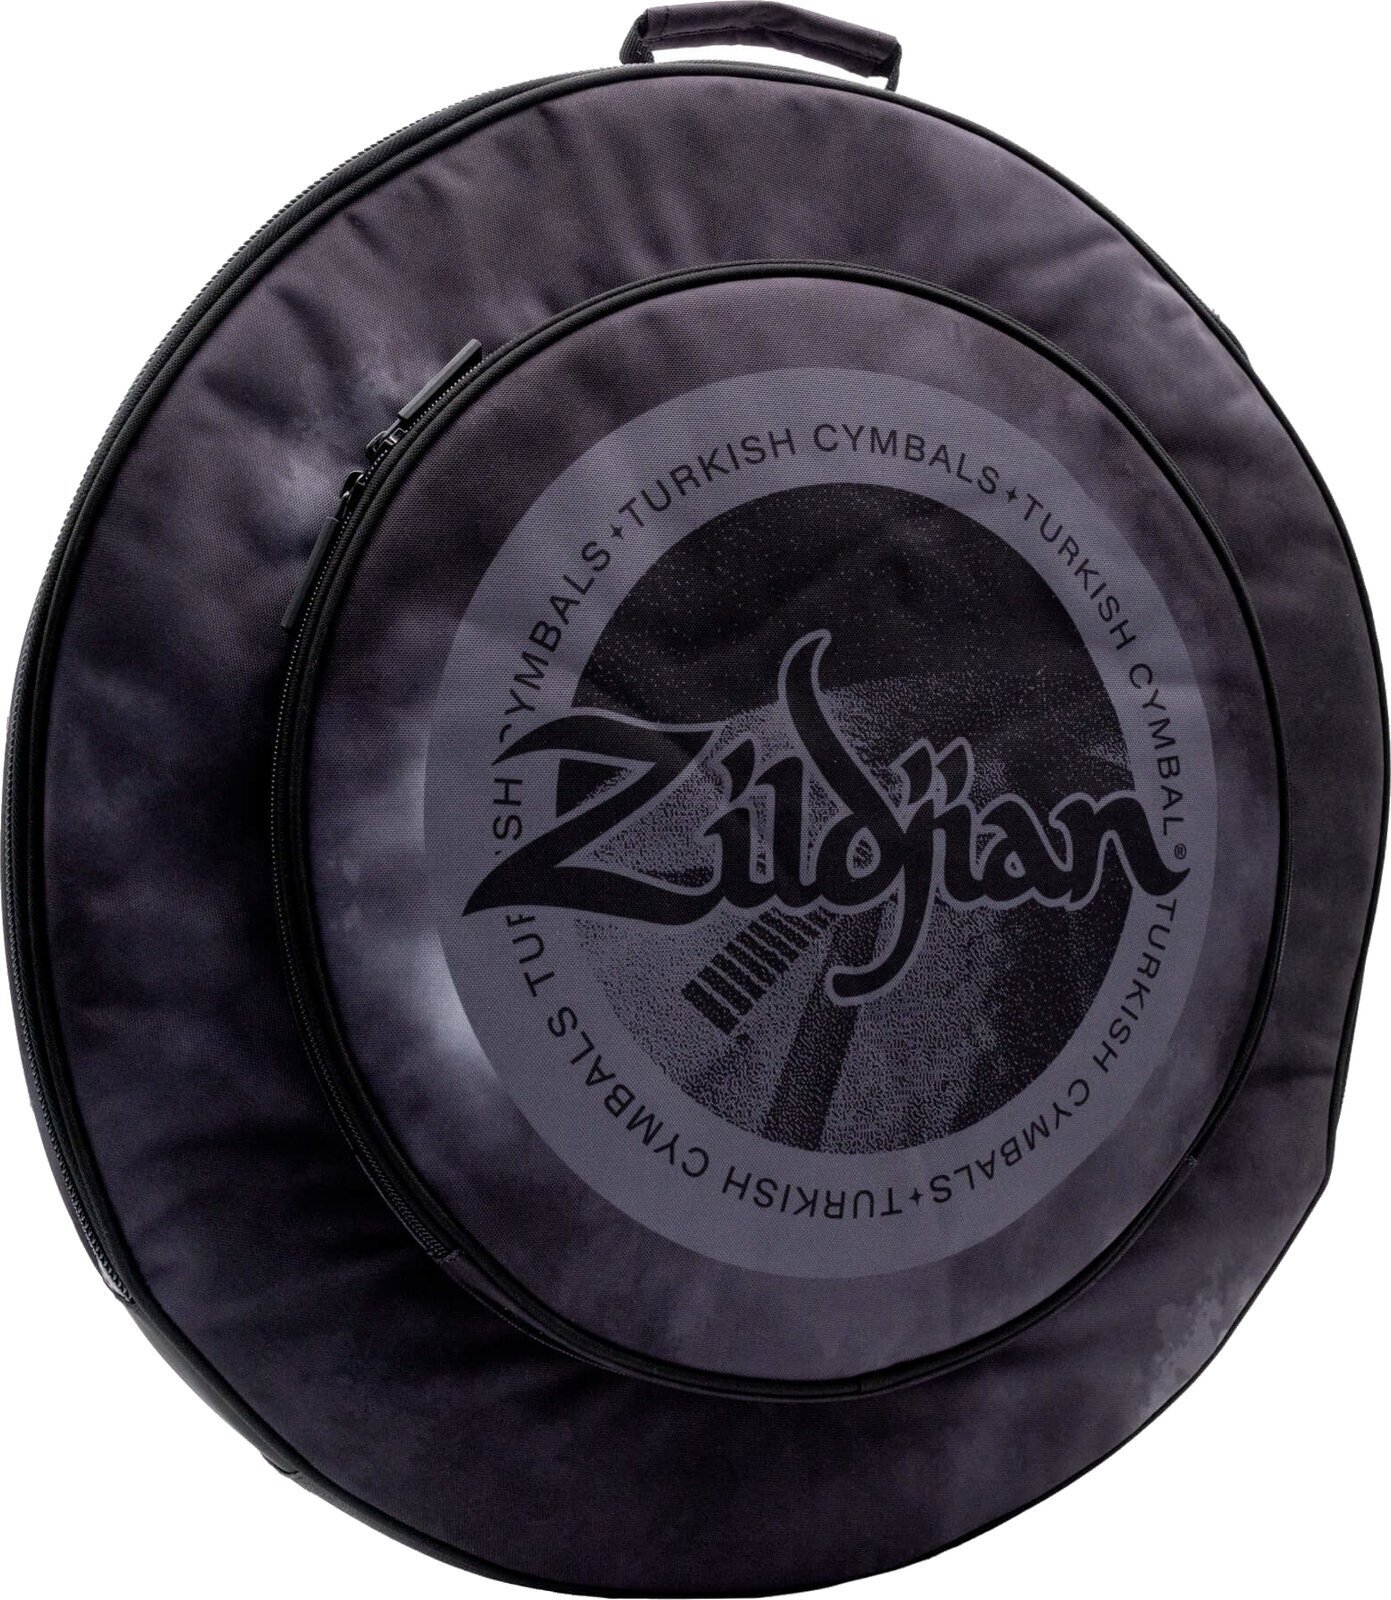 Cymbal Bag Zildjian 20" Student Cymbal Bag Black Rain Cloud Cymbal Bag